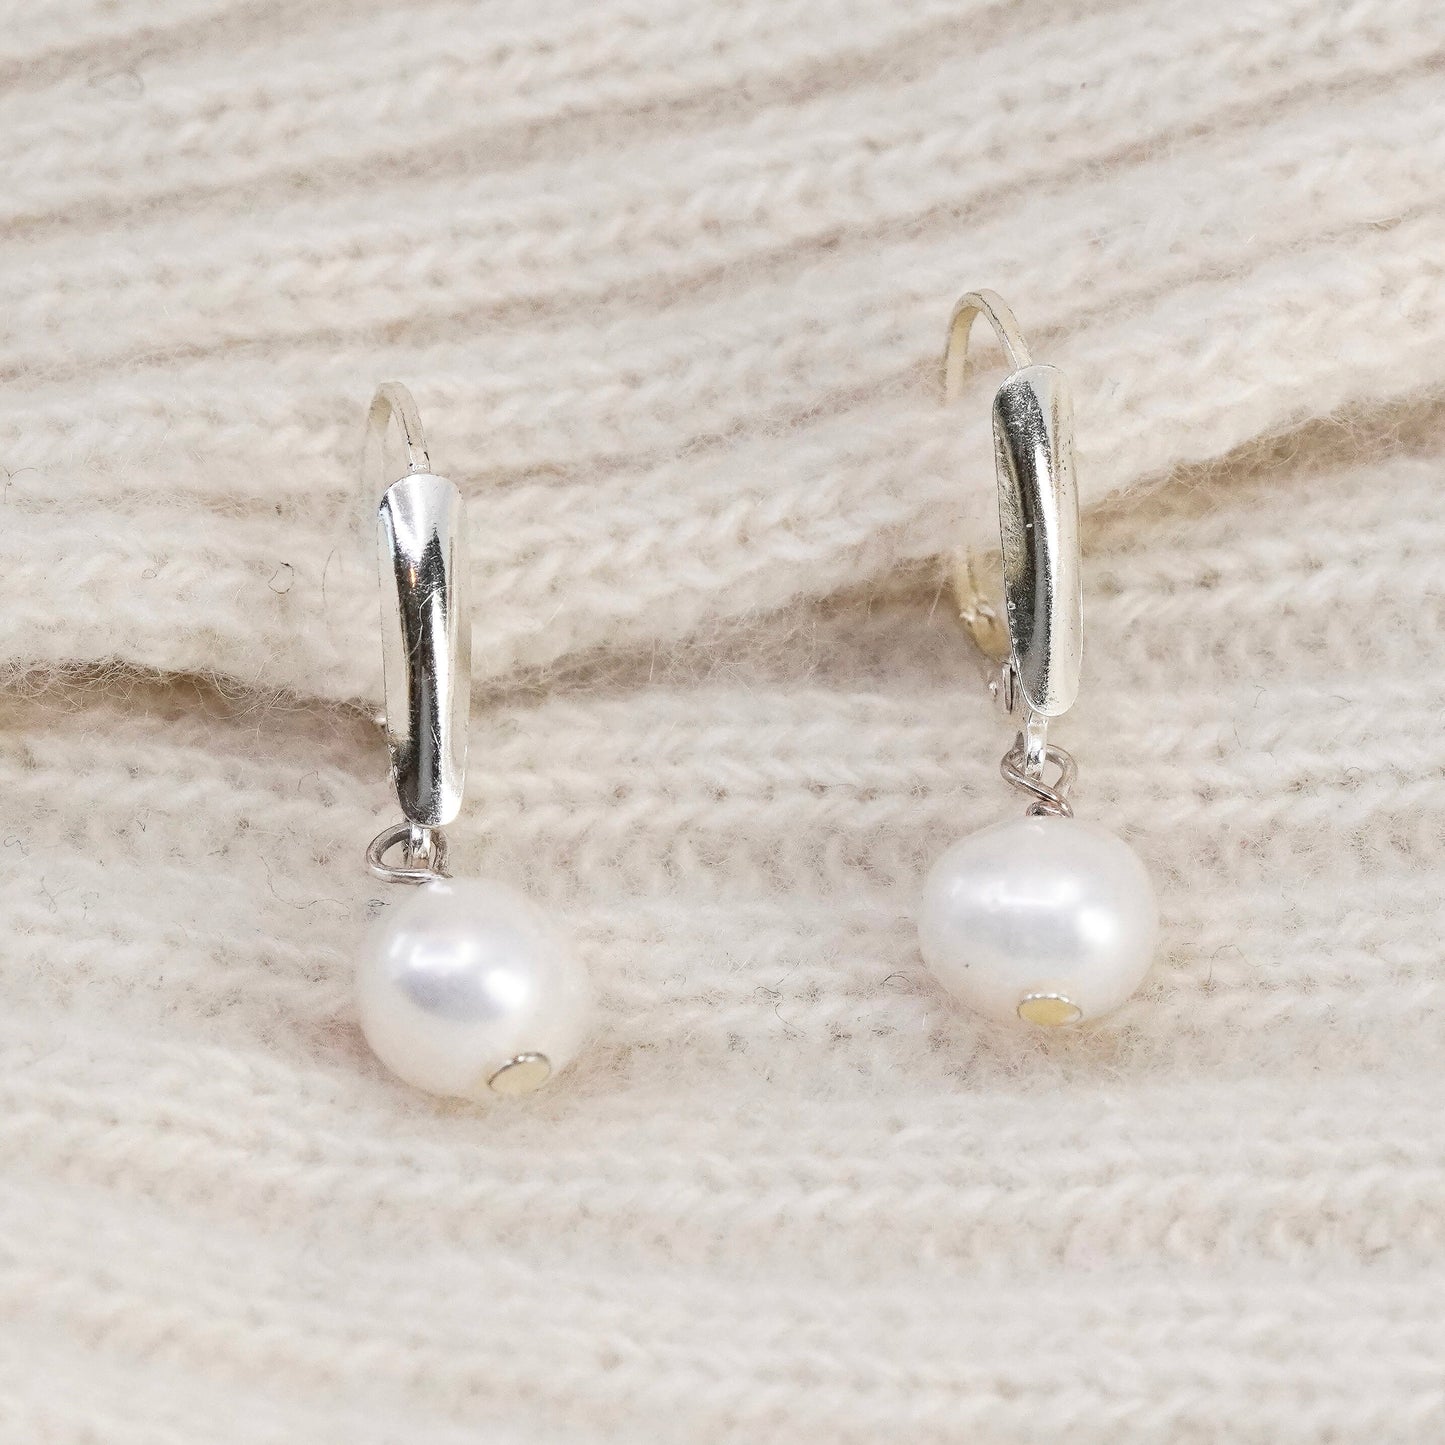 Vintage Sterling silver handmade earrings, 925 hooks with pearl